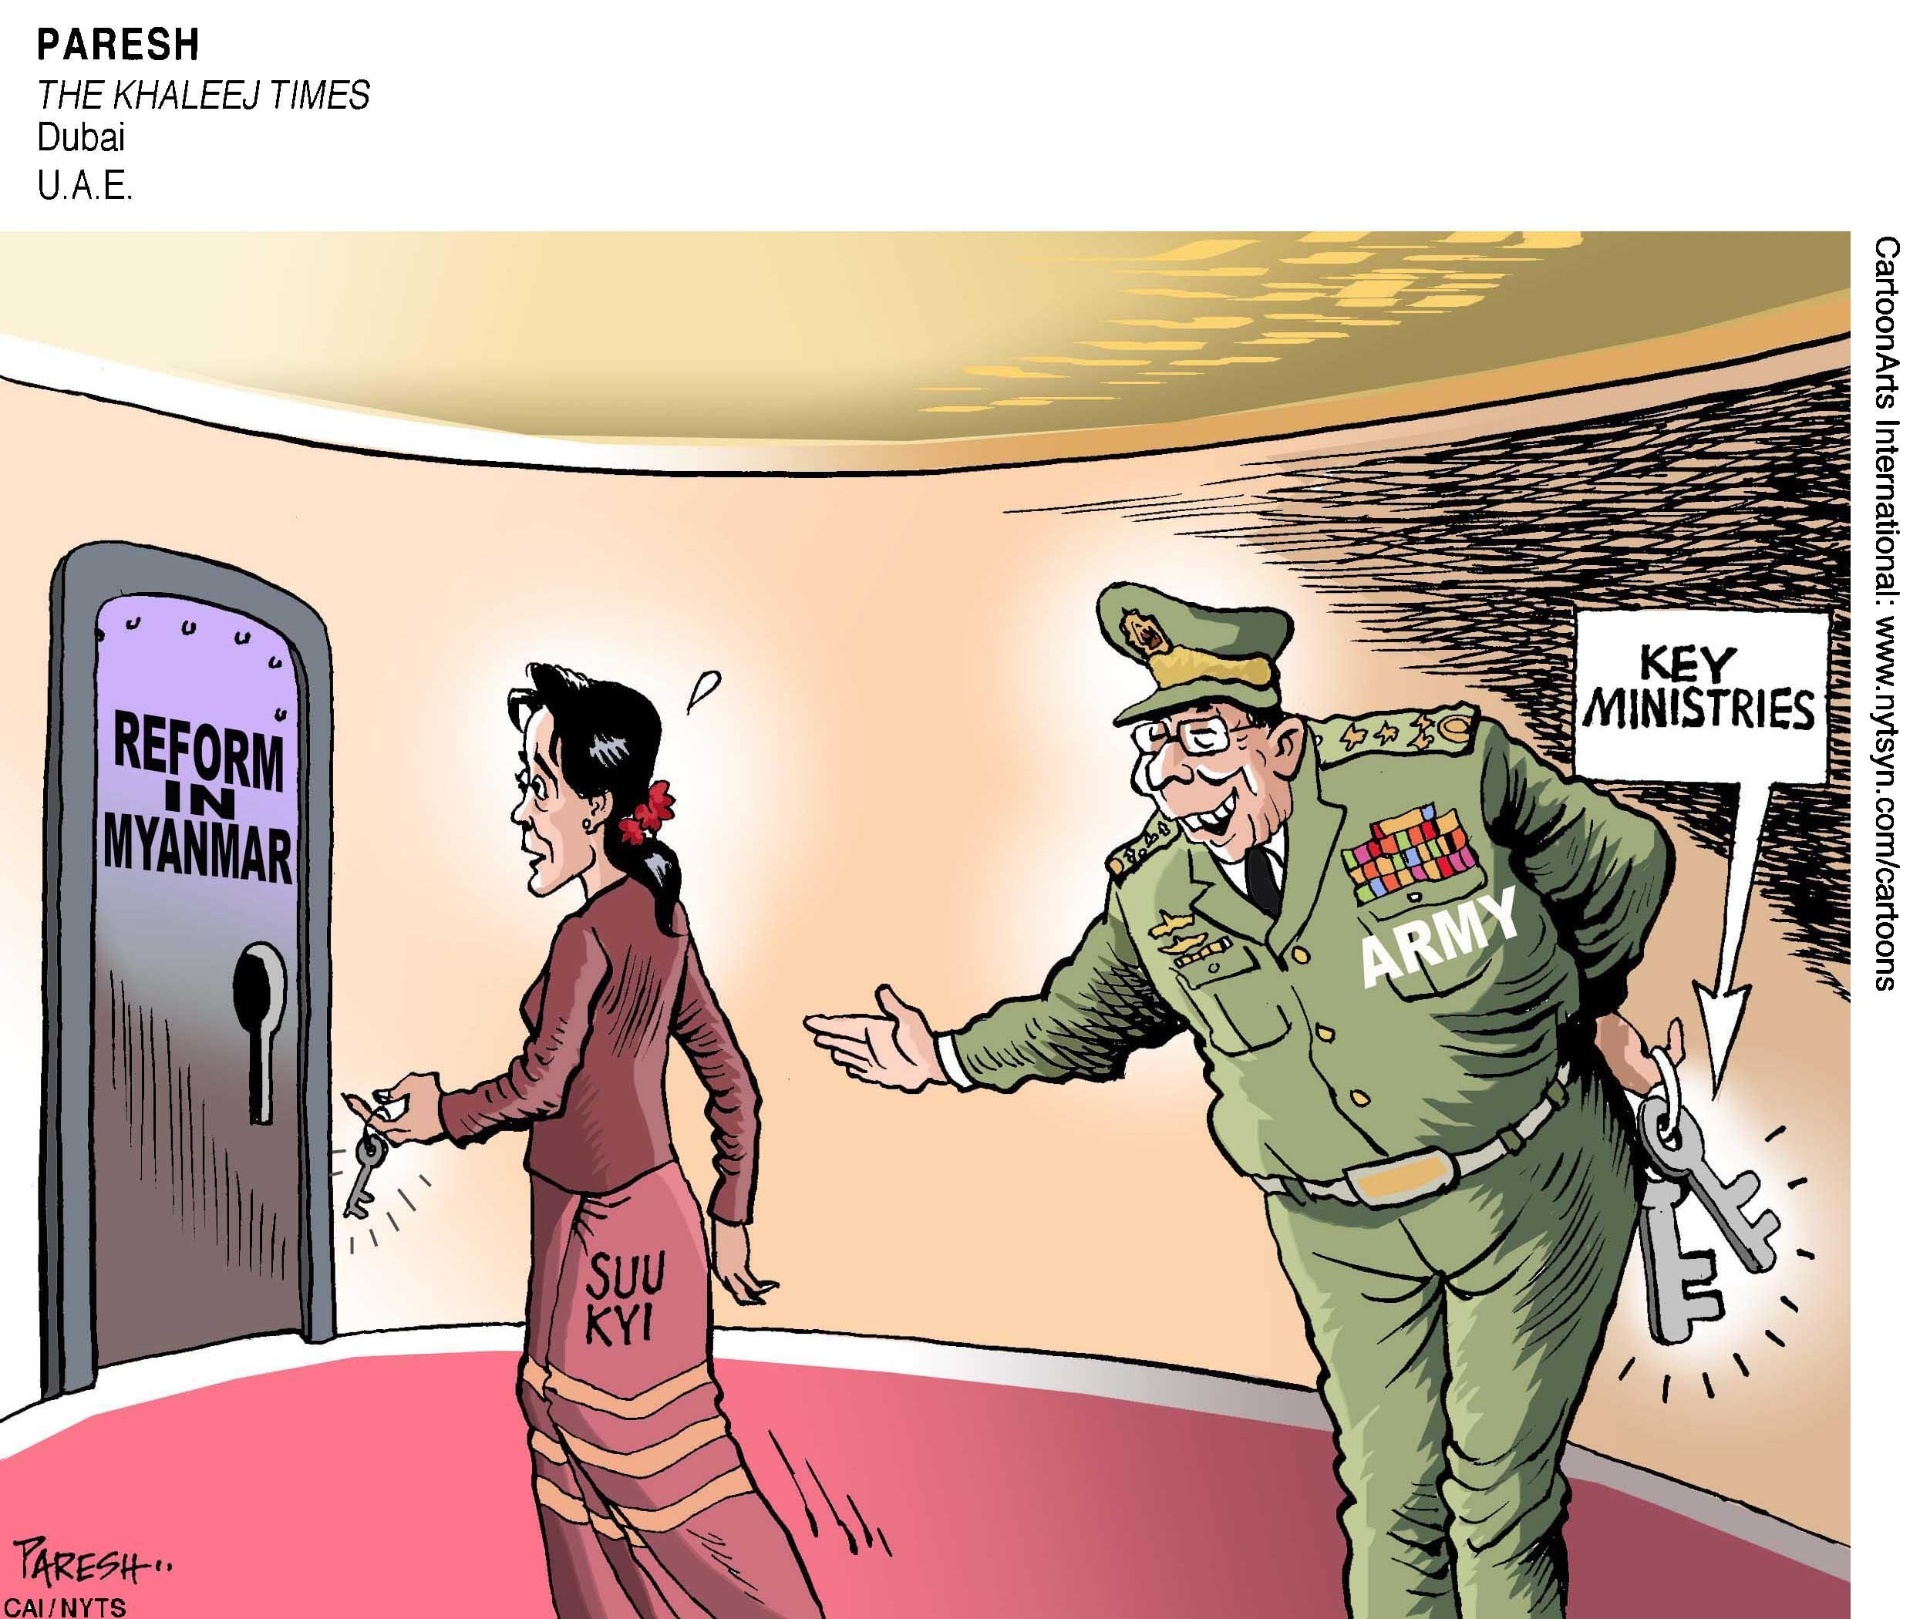 FEVEREIRO: PASSOS EM DIREÇÃO À DEMOCRACIA EM MIANMAR - No dia primeiro de fevereiro, depois de mais de 50 anos de regime militar, Mianmar abriu seu primeiro Parlamento livremente eleito. Aung San Suu Kyi, a líder do movimento da democracia do país, logo recebeu o cargo de "conselheira de Estado," que lhe dá mais poder do que o presidente de Mianmar. Ela também controla diversos ministérios. As reformas prometidas por seu partido ? especialmente a de tornar o país uma democracia plena ? podem vir lentamente, já que os militares ainda detêm três ministérios chaves e um quarto dos assentos parlamentares, que é o suficiente para bloquear emendas à Constituição.